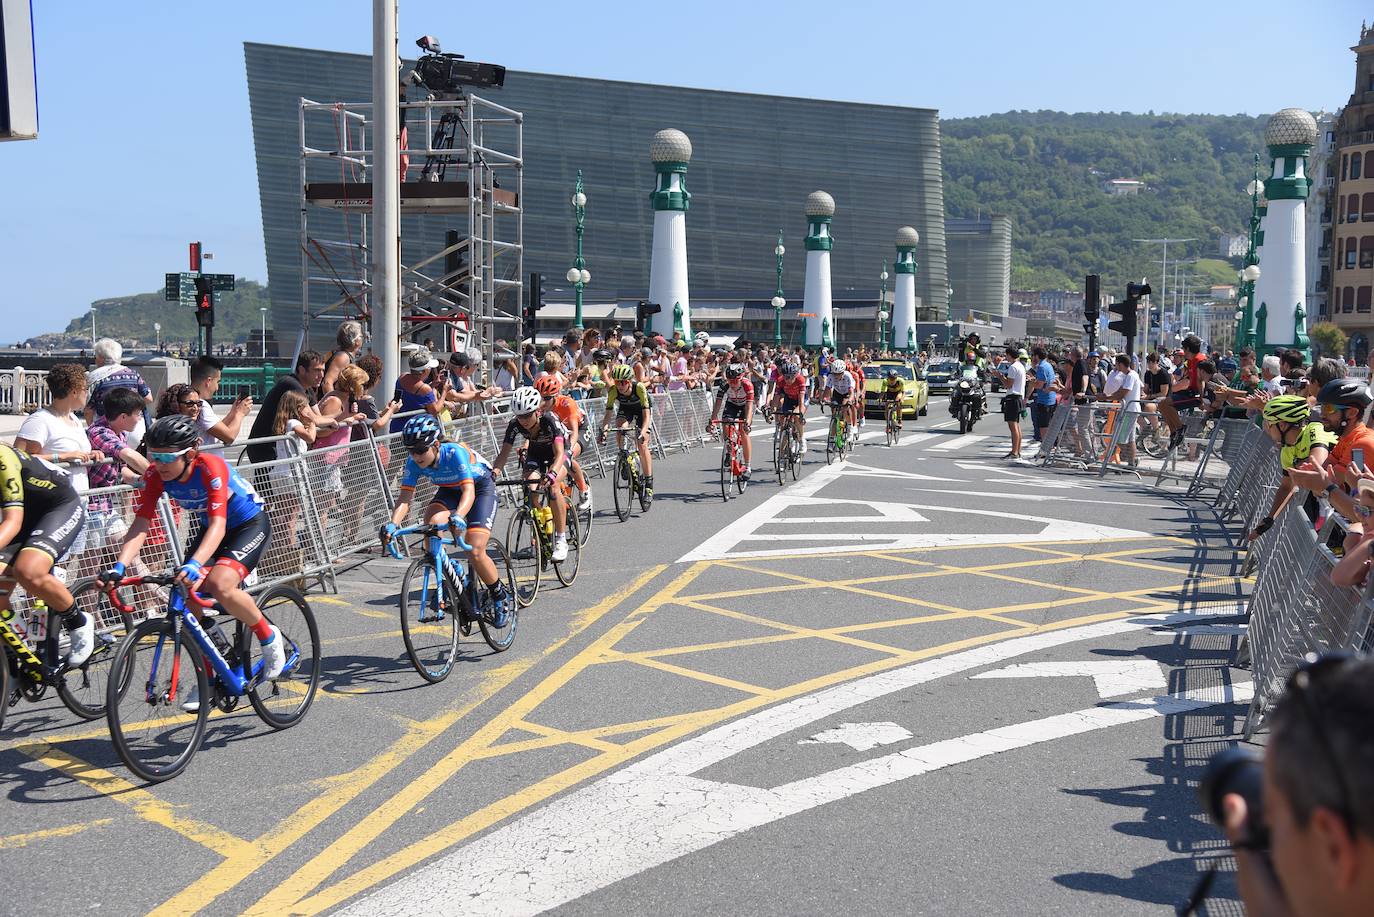 Emoción por todo lo alto en la disputa de la primera edición femenina de la Clásica de San Sebastián, con mucho público animando a las corredoras por todo el recorrido